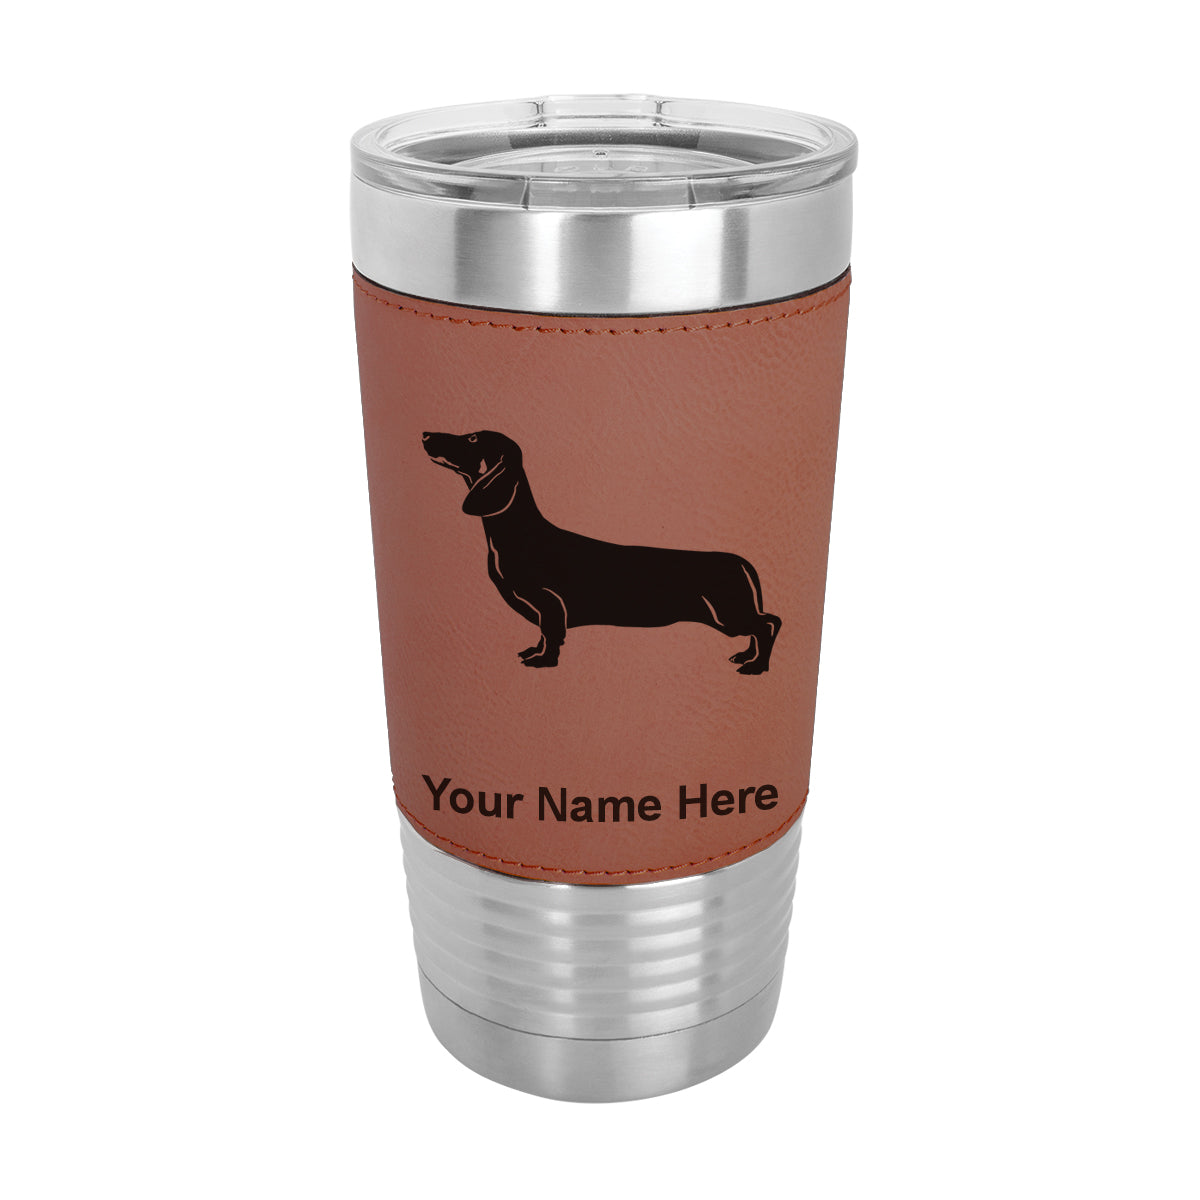 20oz Faux Leather Tumbler Mug, Dachshund Dog, Personalized Engraving Included - LaserGram Custom Engraved Gifts